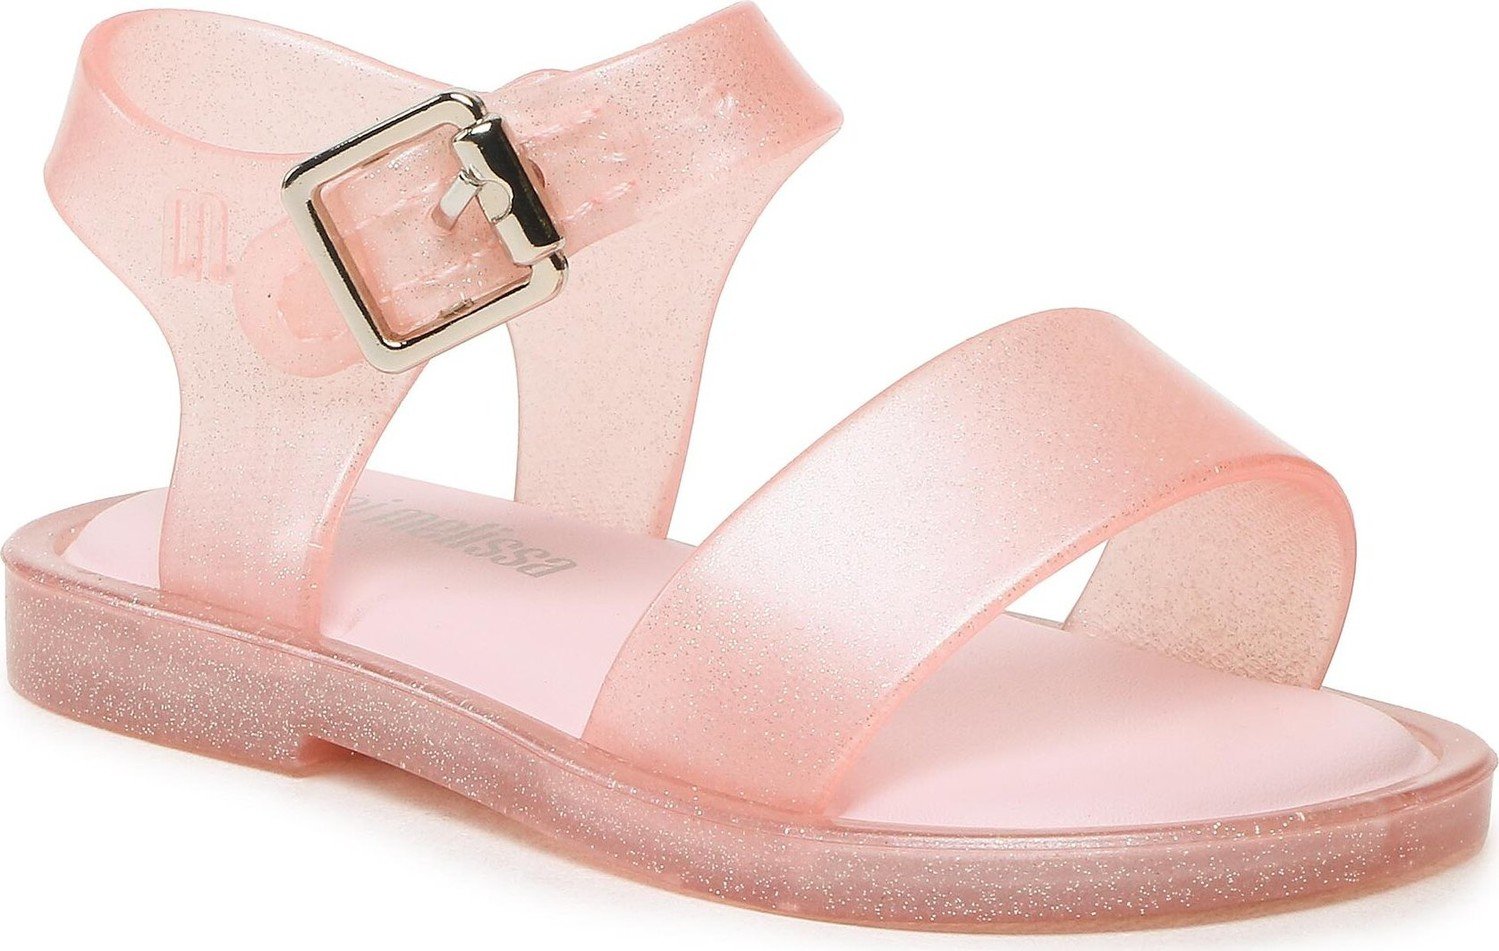 Sandály Melissa Mini Melissa mar Sandal IV Bb 32633 Pink/Glitter 53973